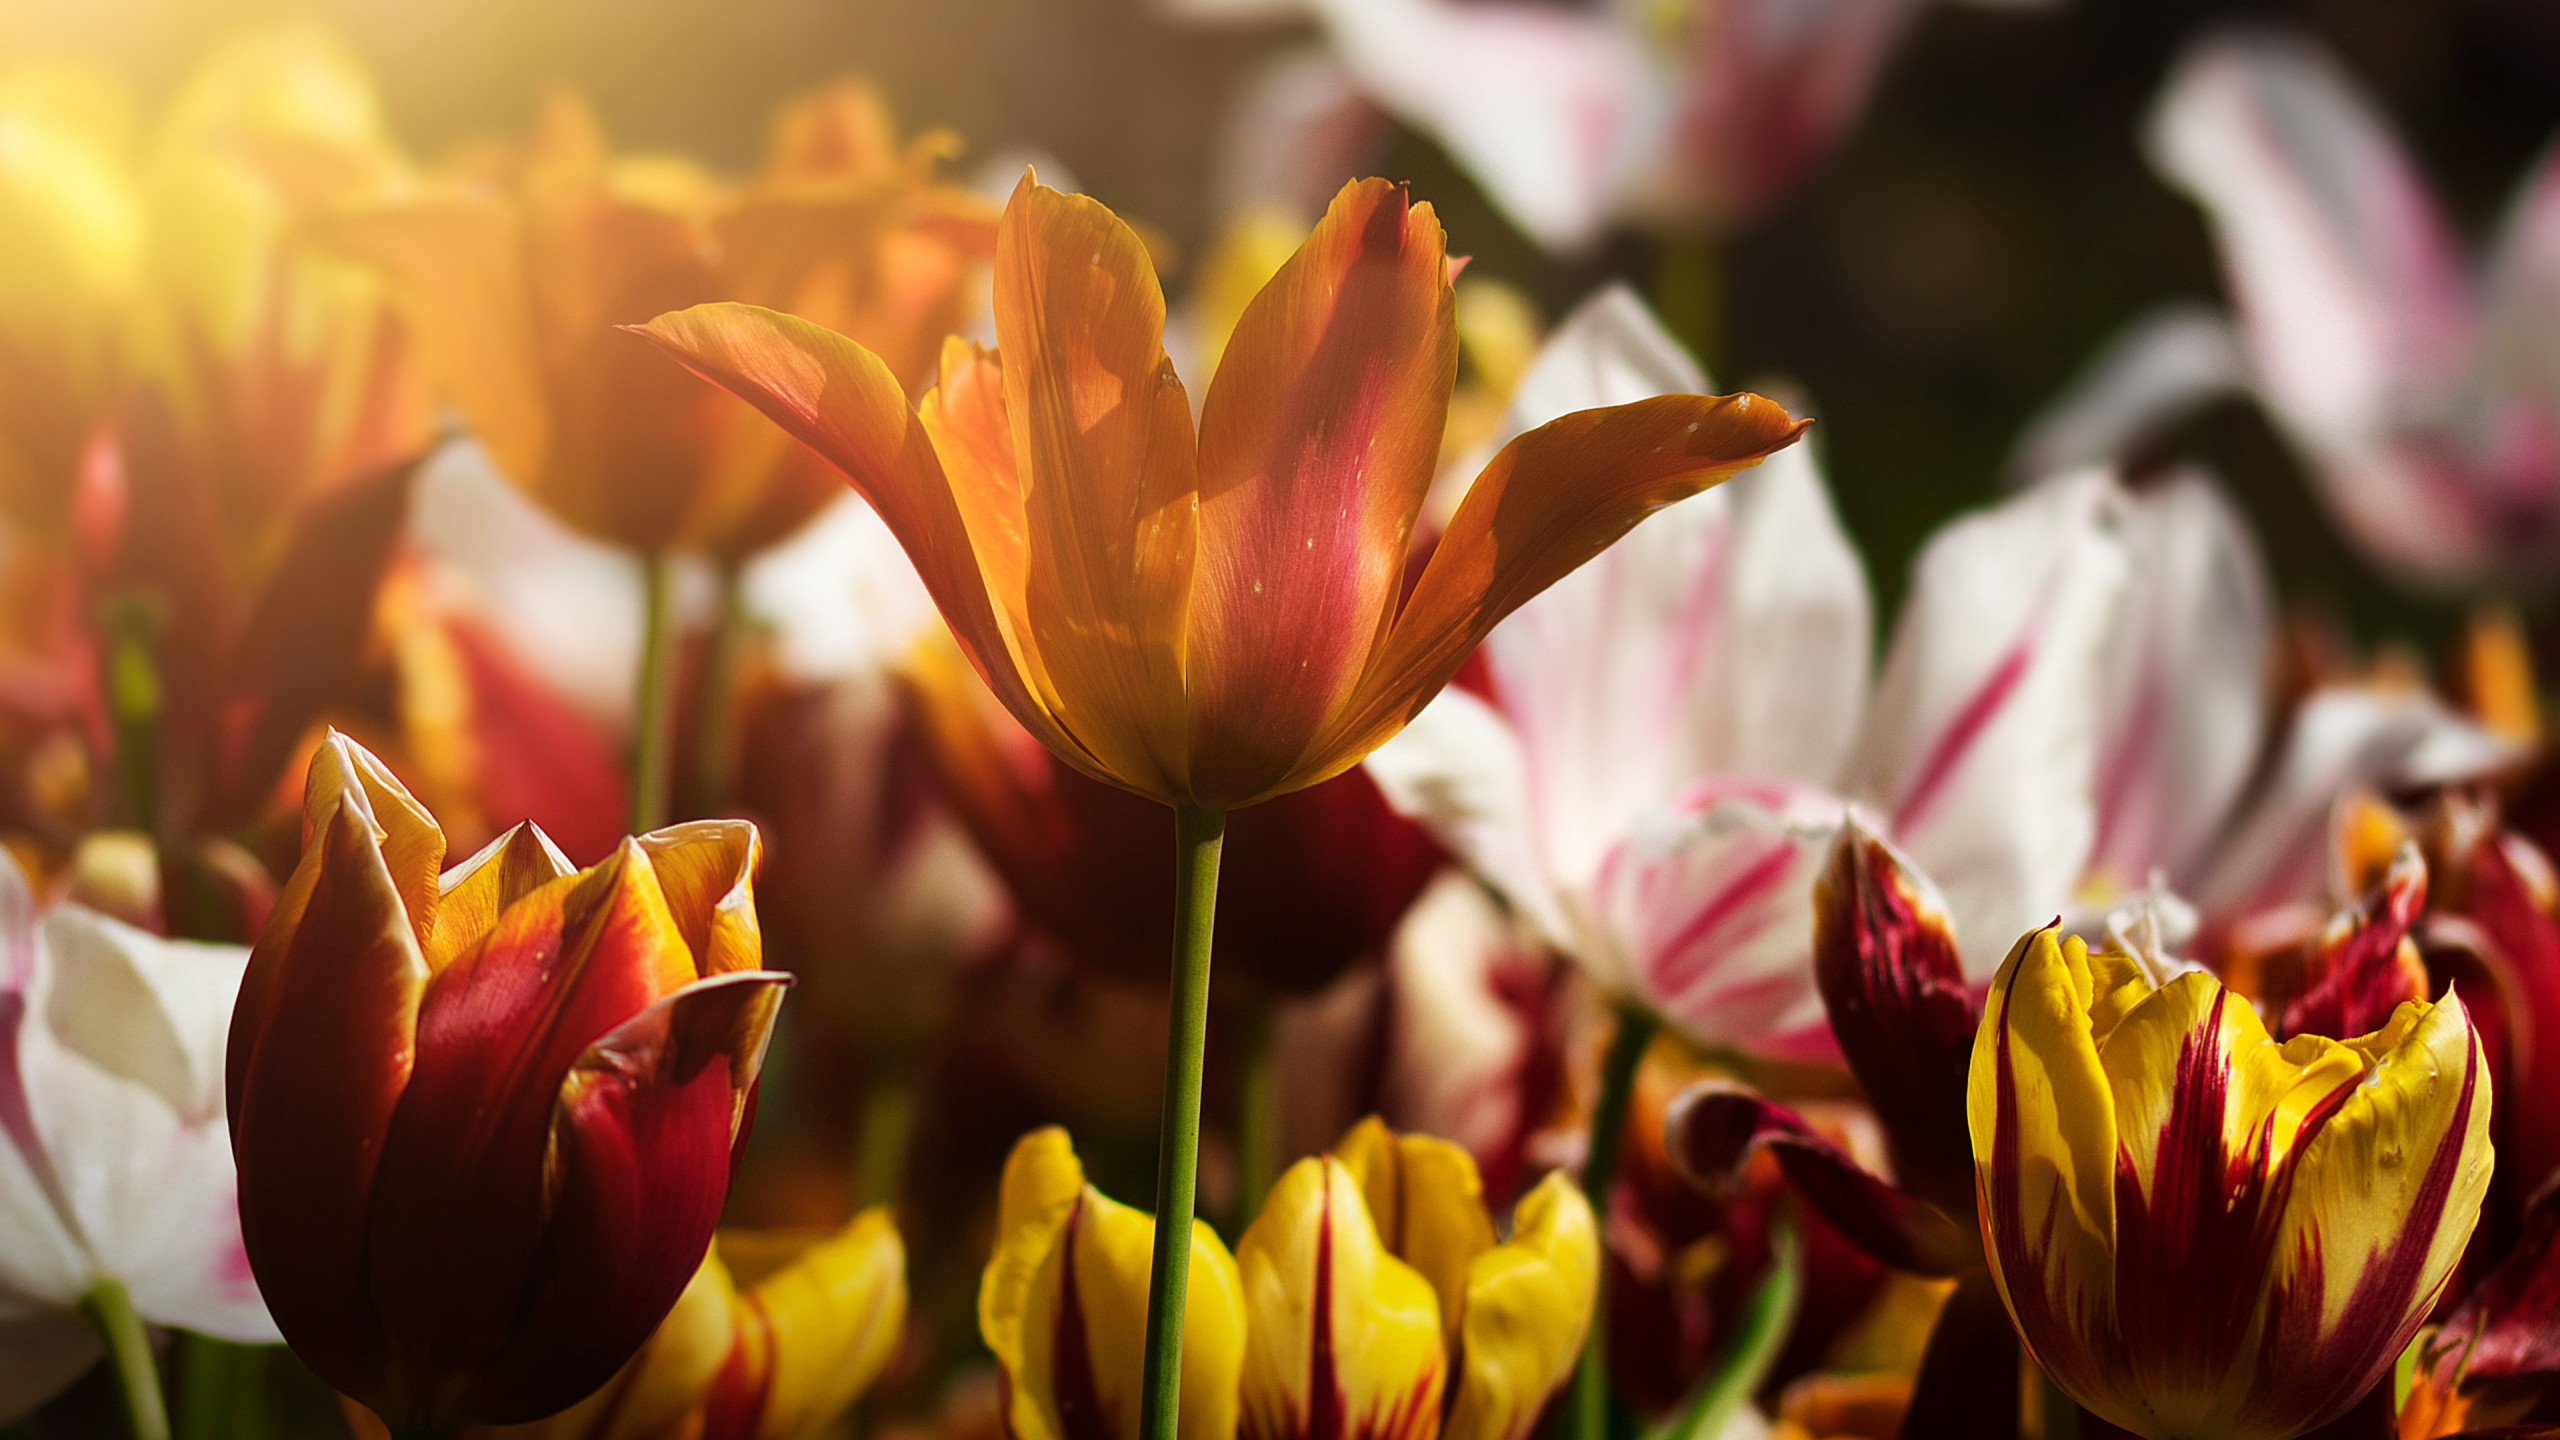 Gorgeous tulips wallpaper 2560x1440